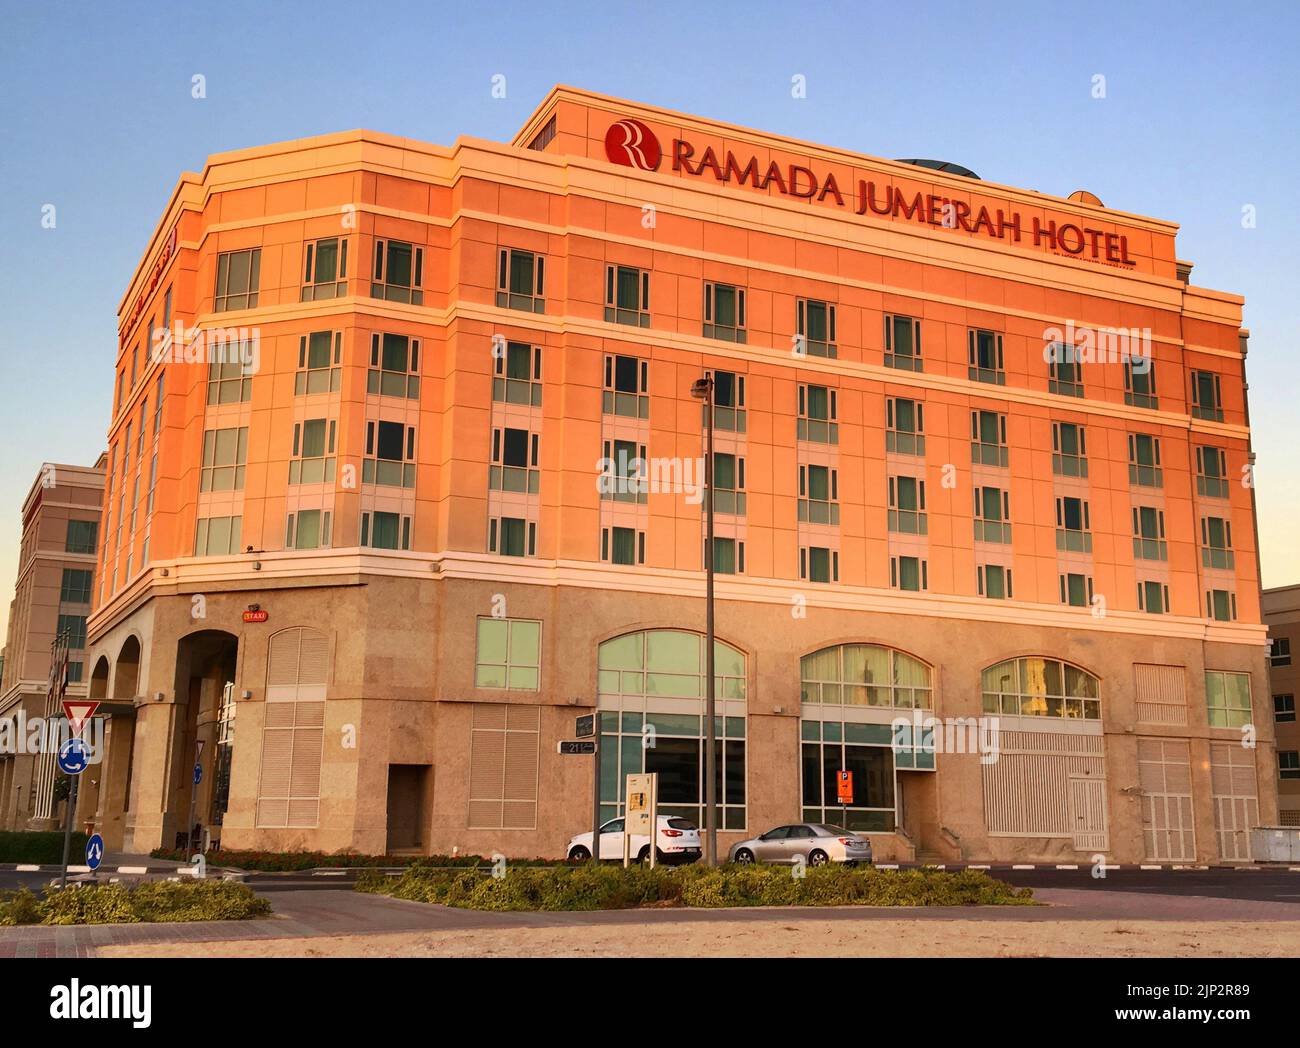 Hotel dubai ramada fotografías e imágenes de alta resolución - Alamy